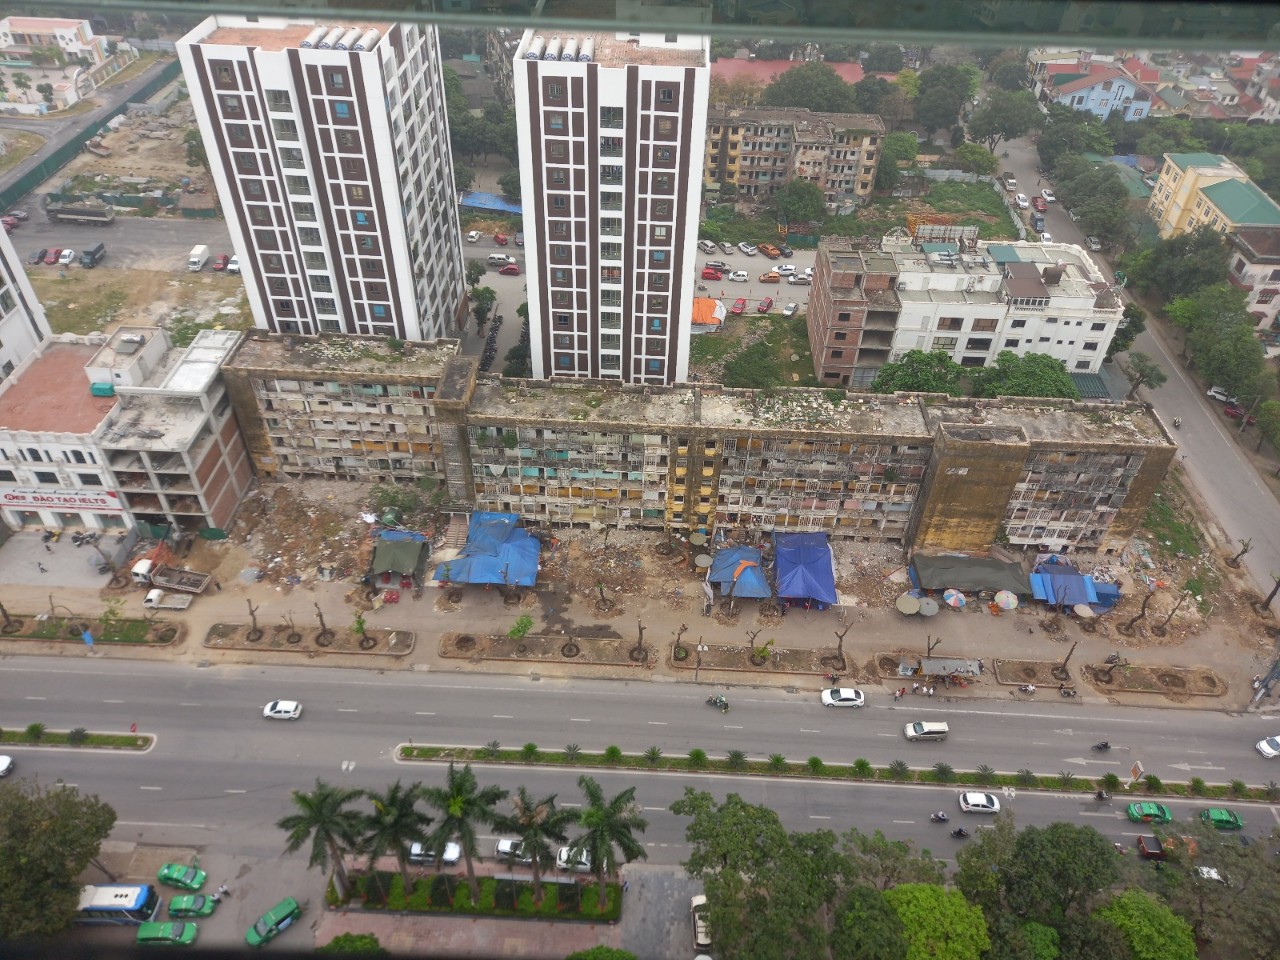 Khu vực Dự án Cải tạo khu B – Khu chung cư Quang Trung, TP Vinh, tỉnh Nghệ An do Tập đoàn Vingroup thực hiện.